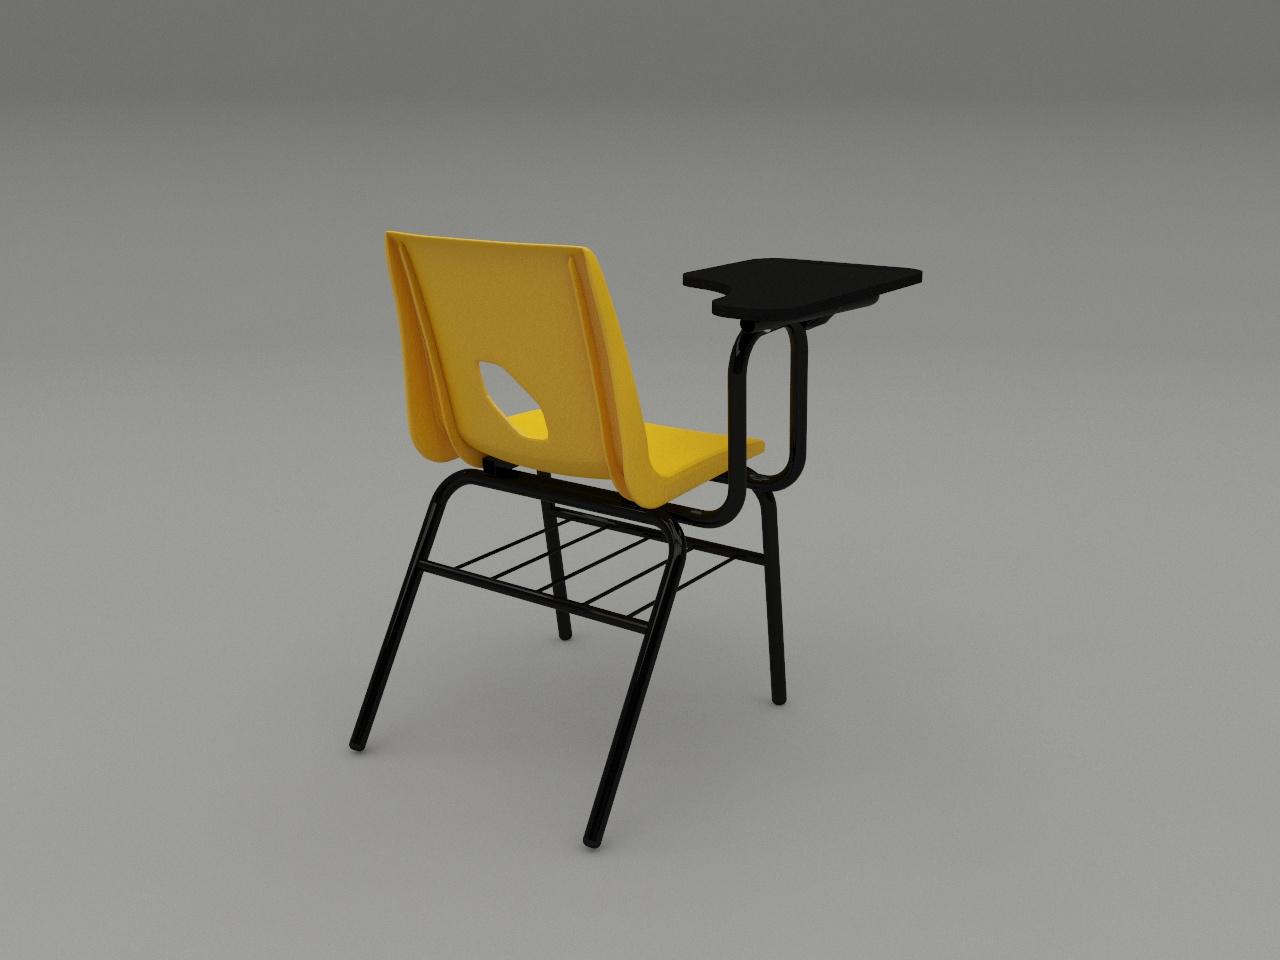 silla de paleta concha plastica color amarilla paleta triformi 15 mm